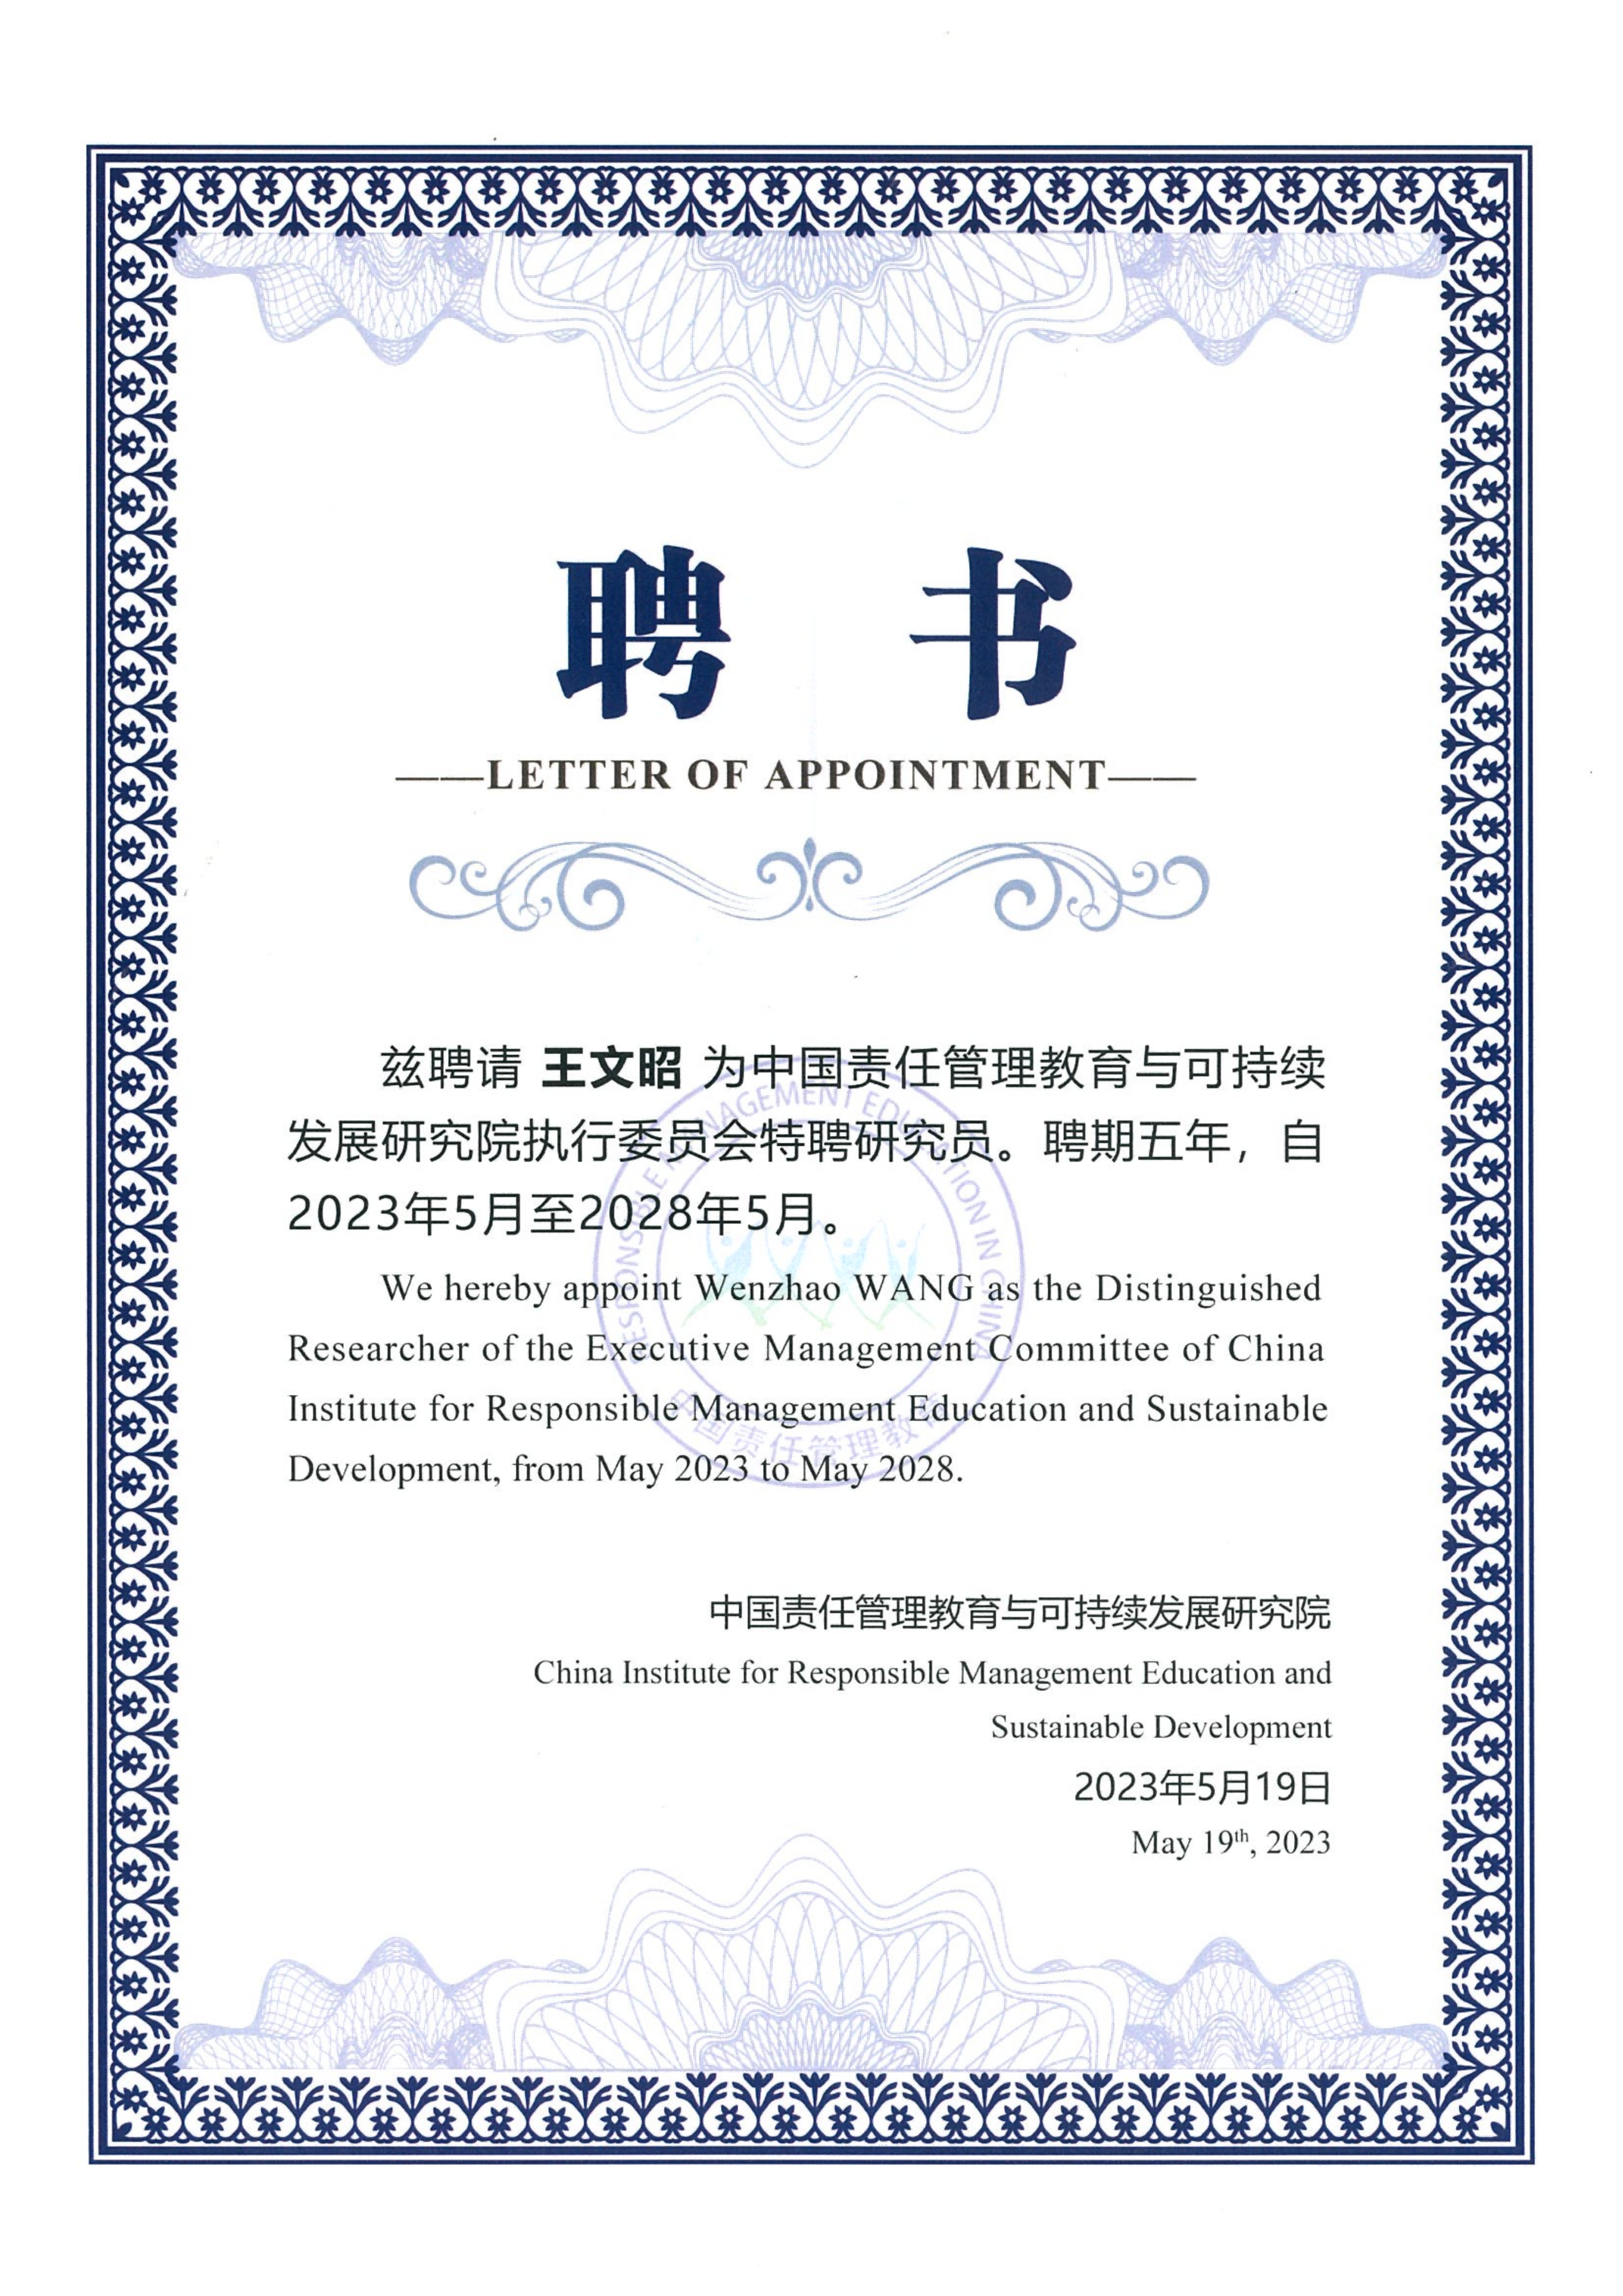 中国责任管理教育与可持续发展研究院执行委员会特聘研究员